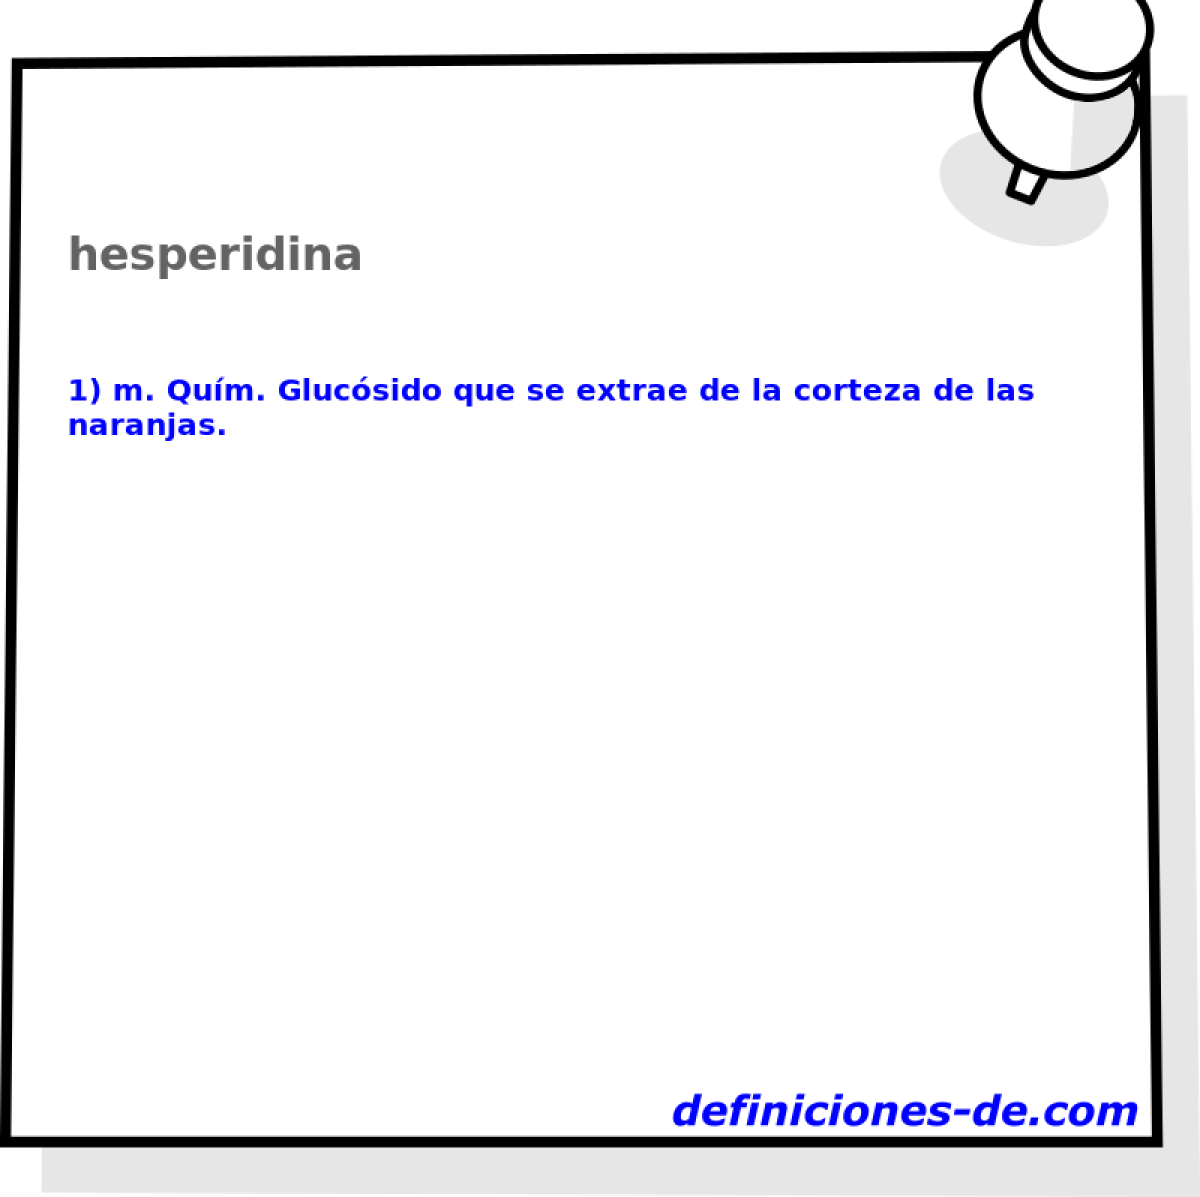 hesperidina 